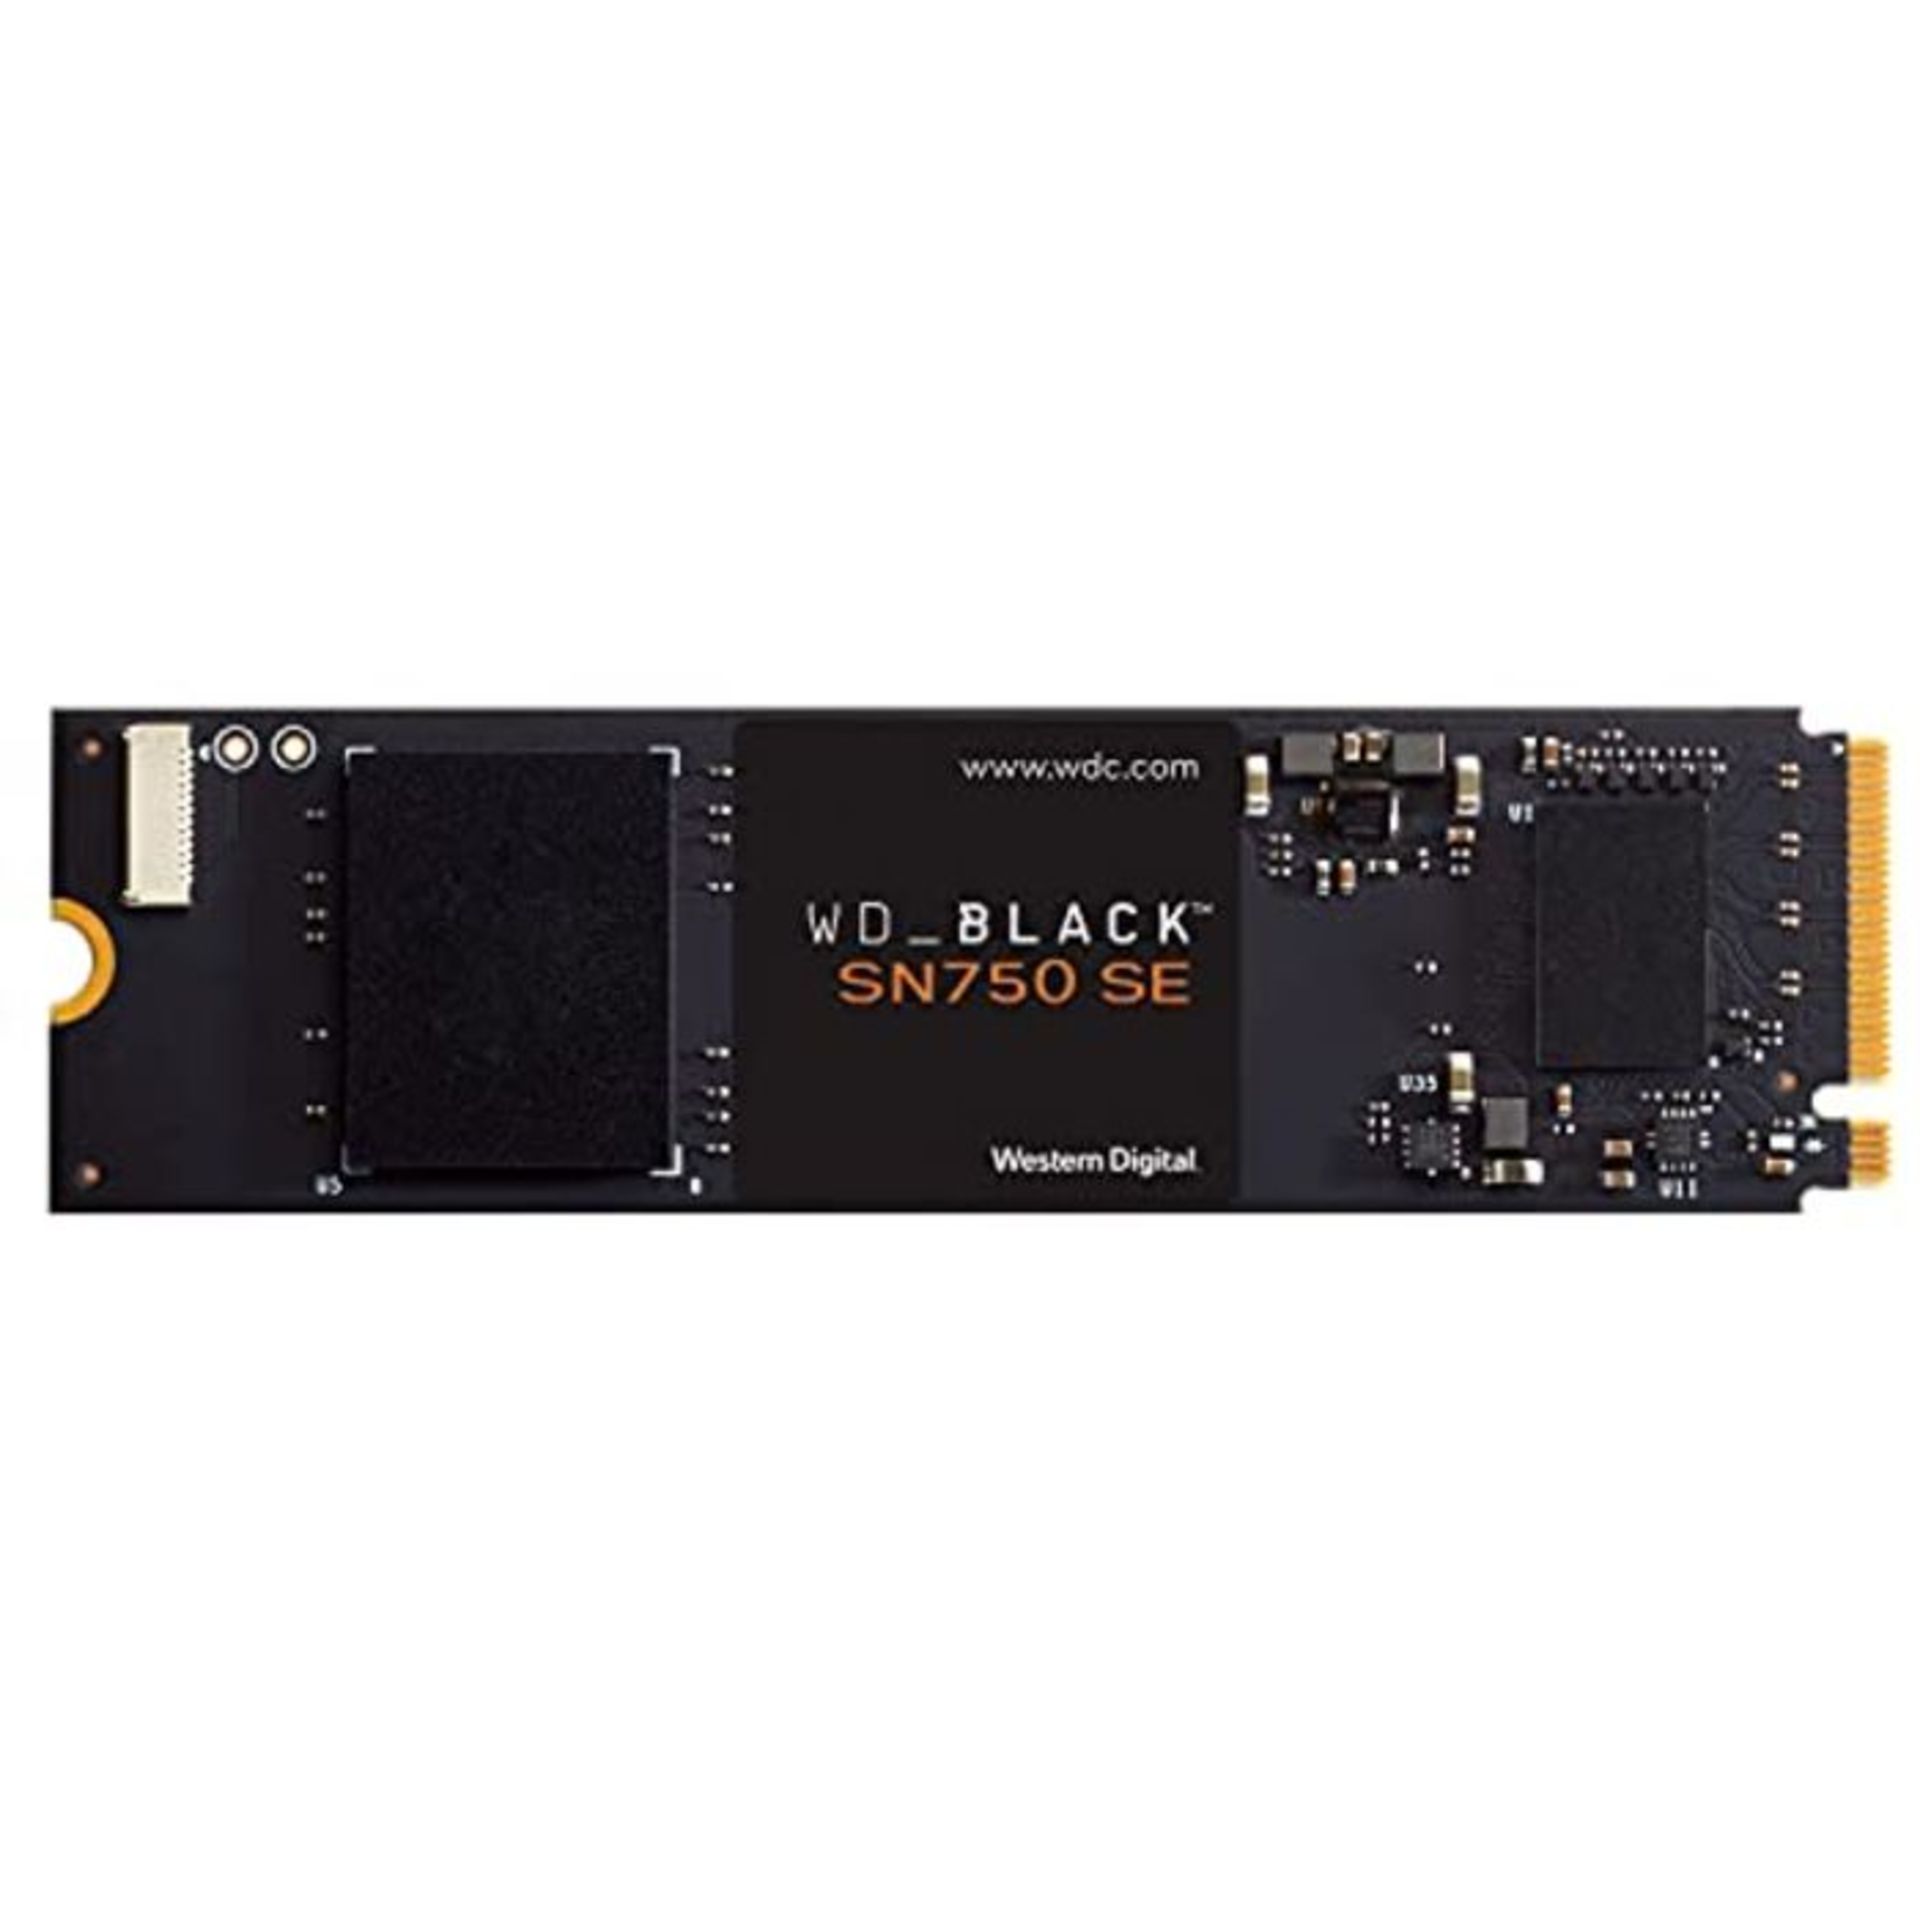 RRP £168.00 W�D�_�B�L�A�C�K� �S�N�8�5�0� �1�T�B� �N�V�M�e� �I�n�t�e�r�n�a�l� �G�a�m�i�n�g� �S�S�D�;�